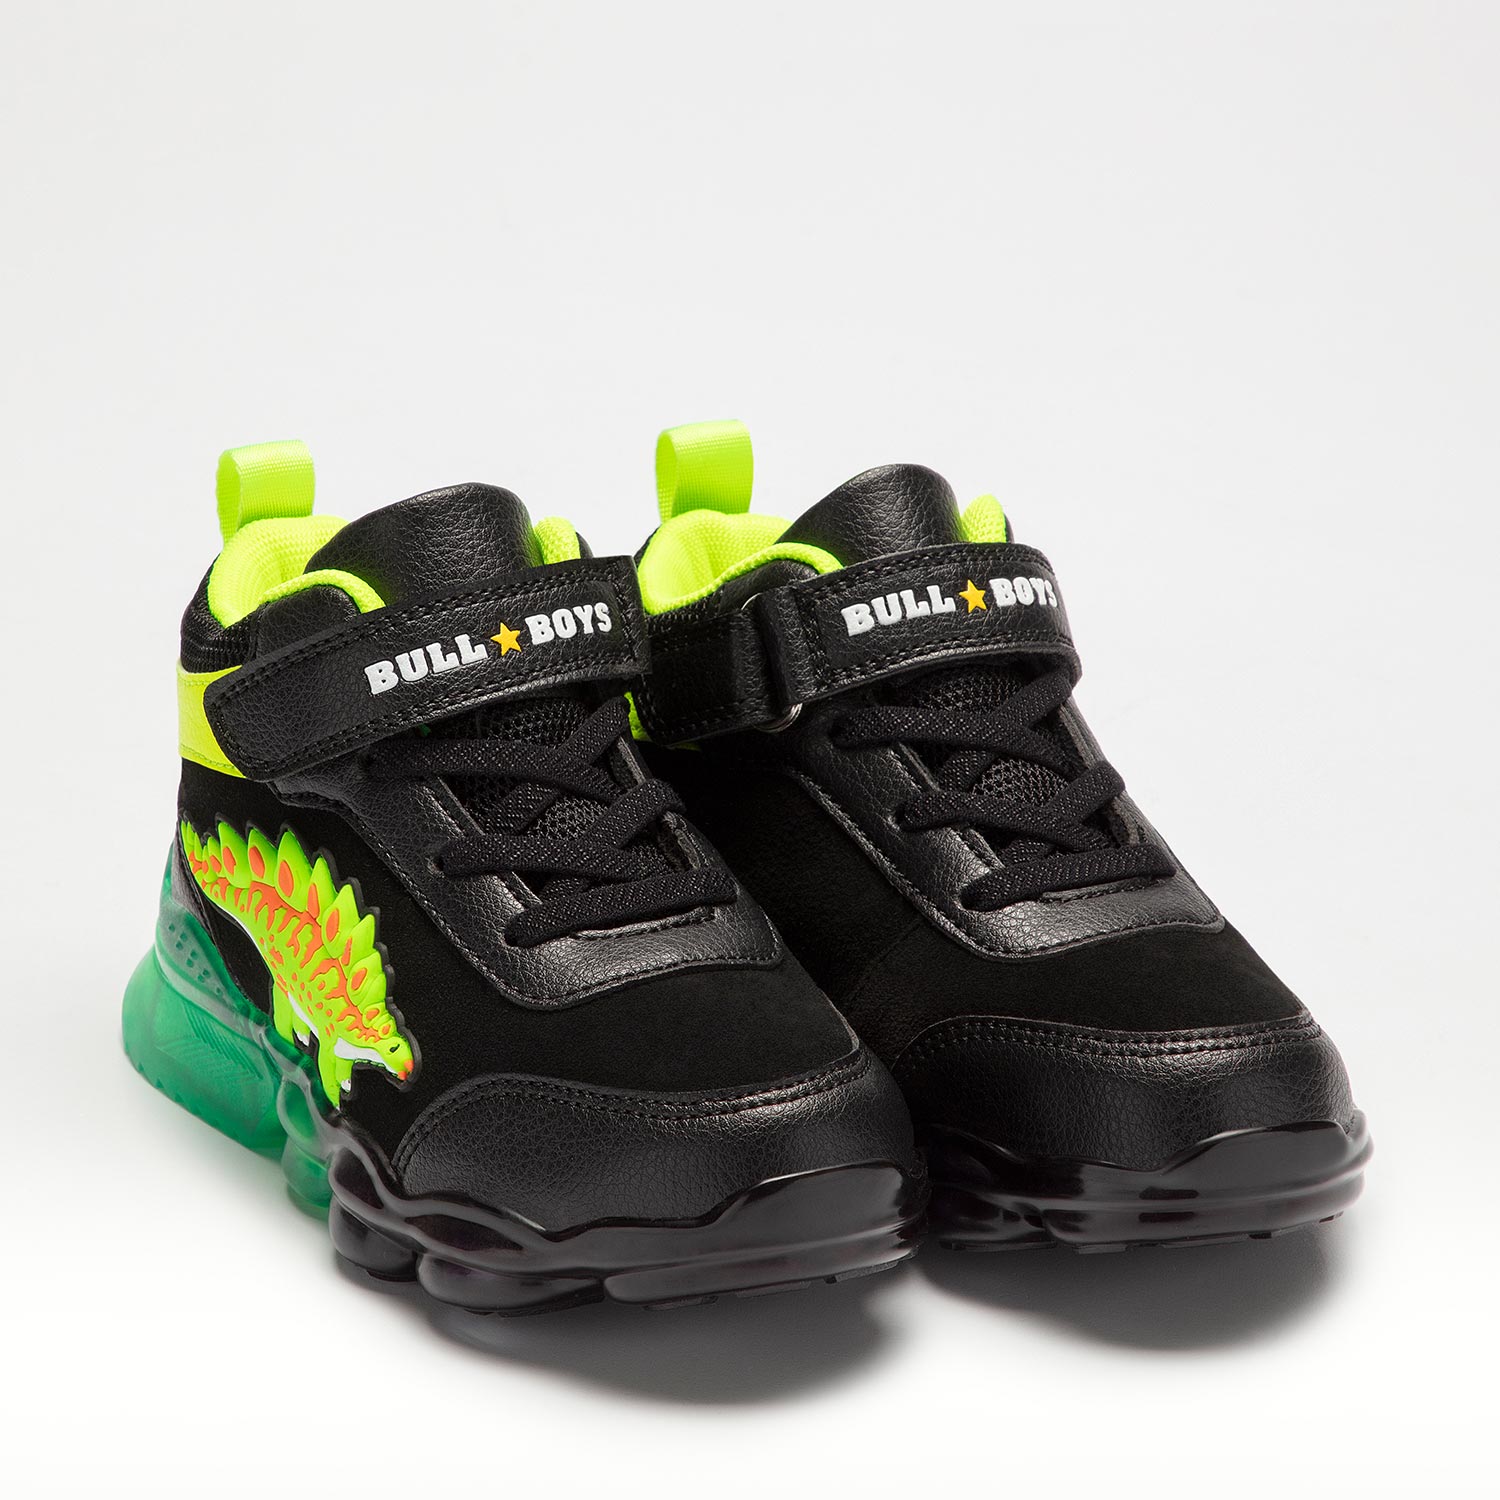 Αθλητικό-sneaker Μποτάκι για αγόρι με δεινόσαυρο στεγόσαυρο  και  φωτάκια Bull Boys DNAL2202